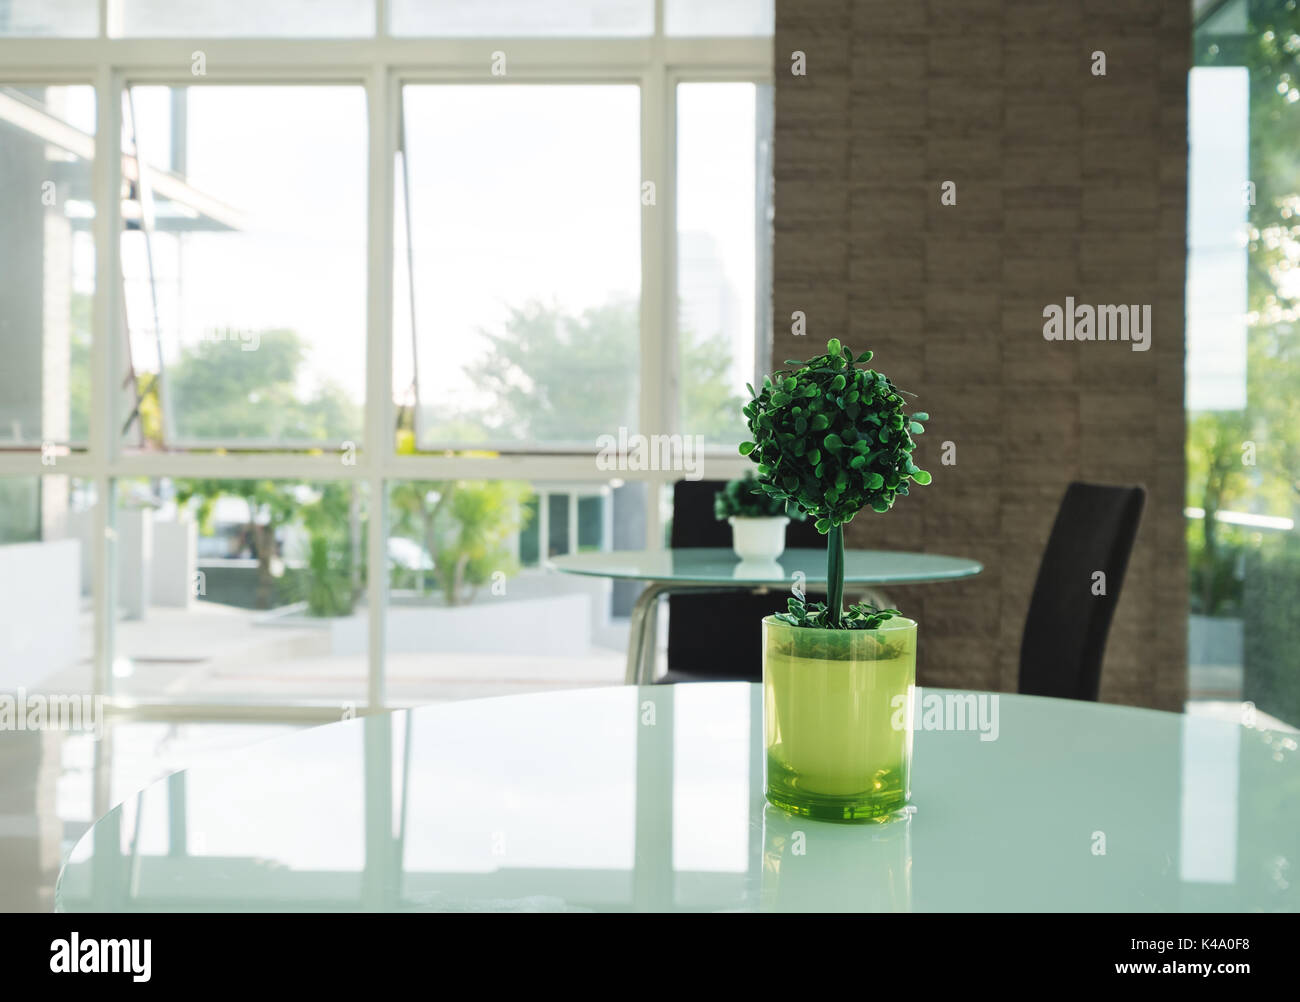 Dekoration künstlichen Baum in grün Vase auf dem Tisch, Interieur, modernen Einrichtung Stockfoto